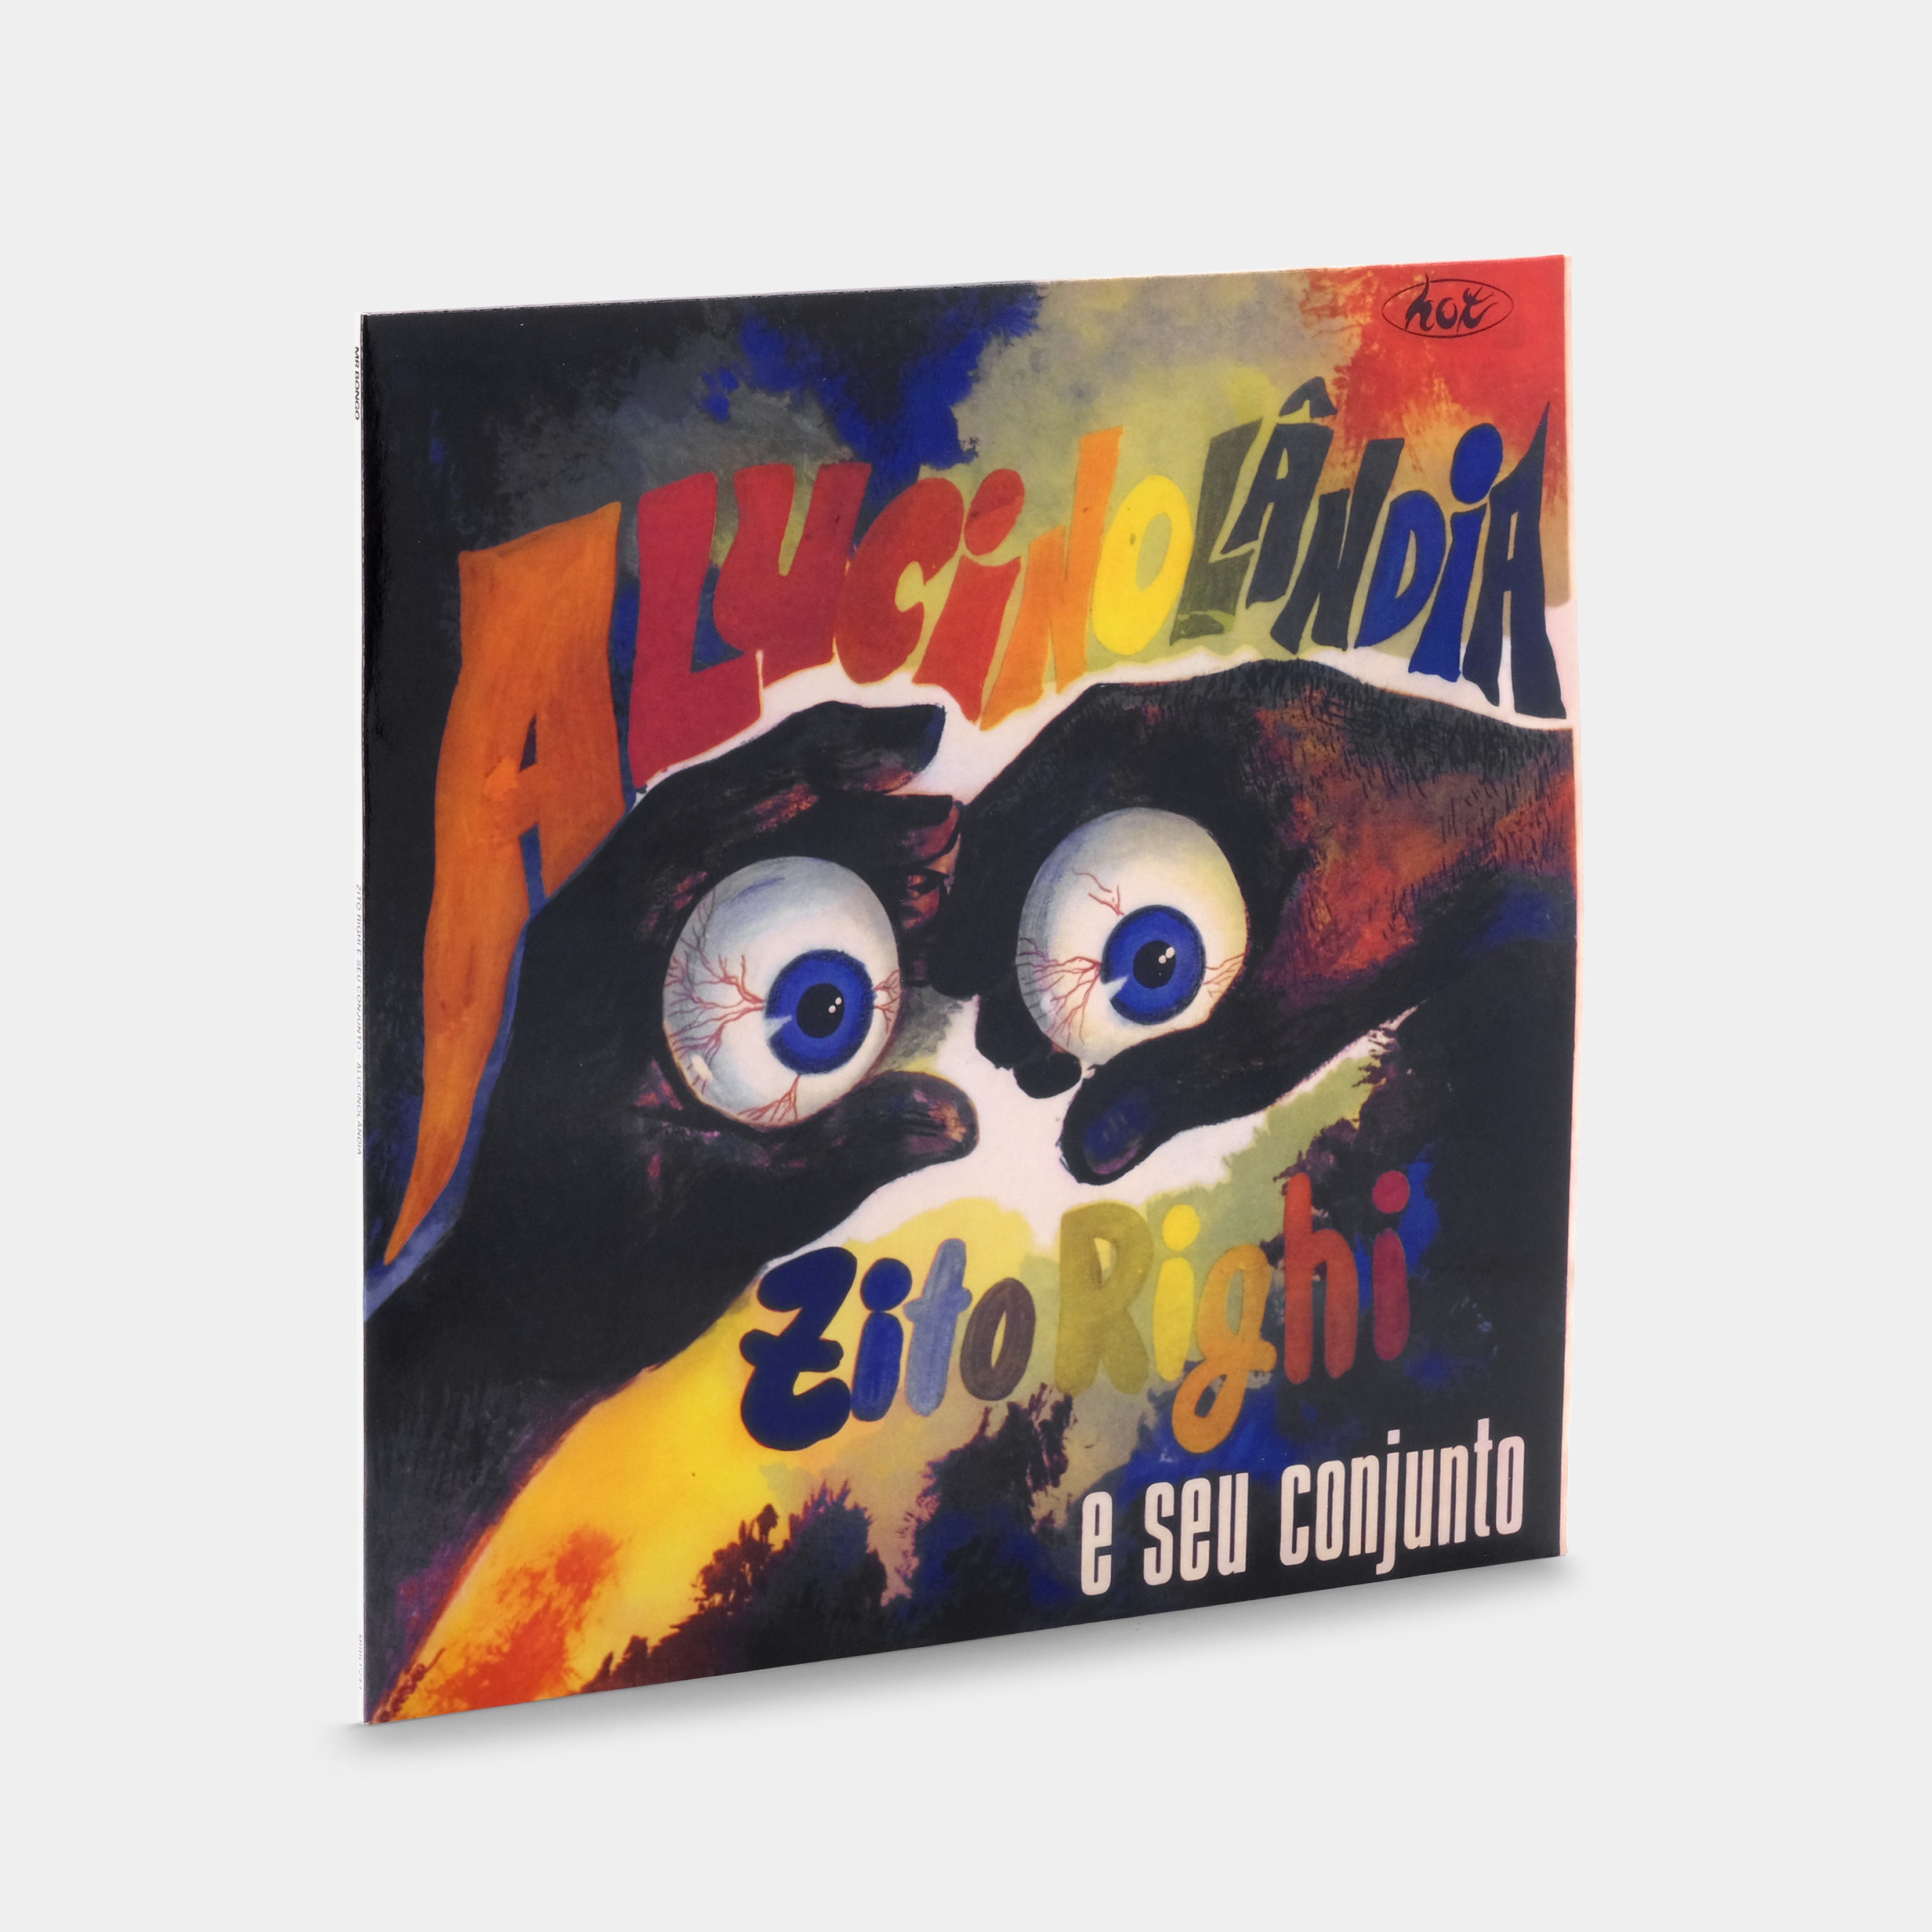 Zito Righi e Seu Conjunto - Alucinolândia LP Vinyl Record